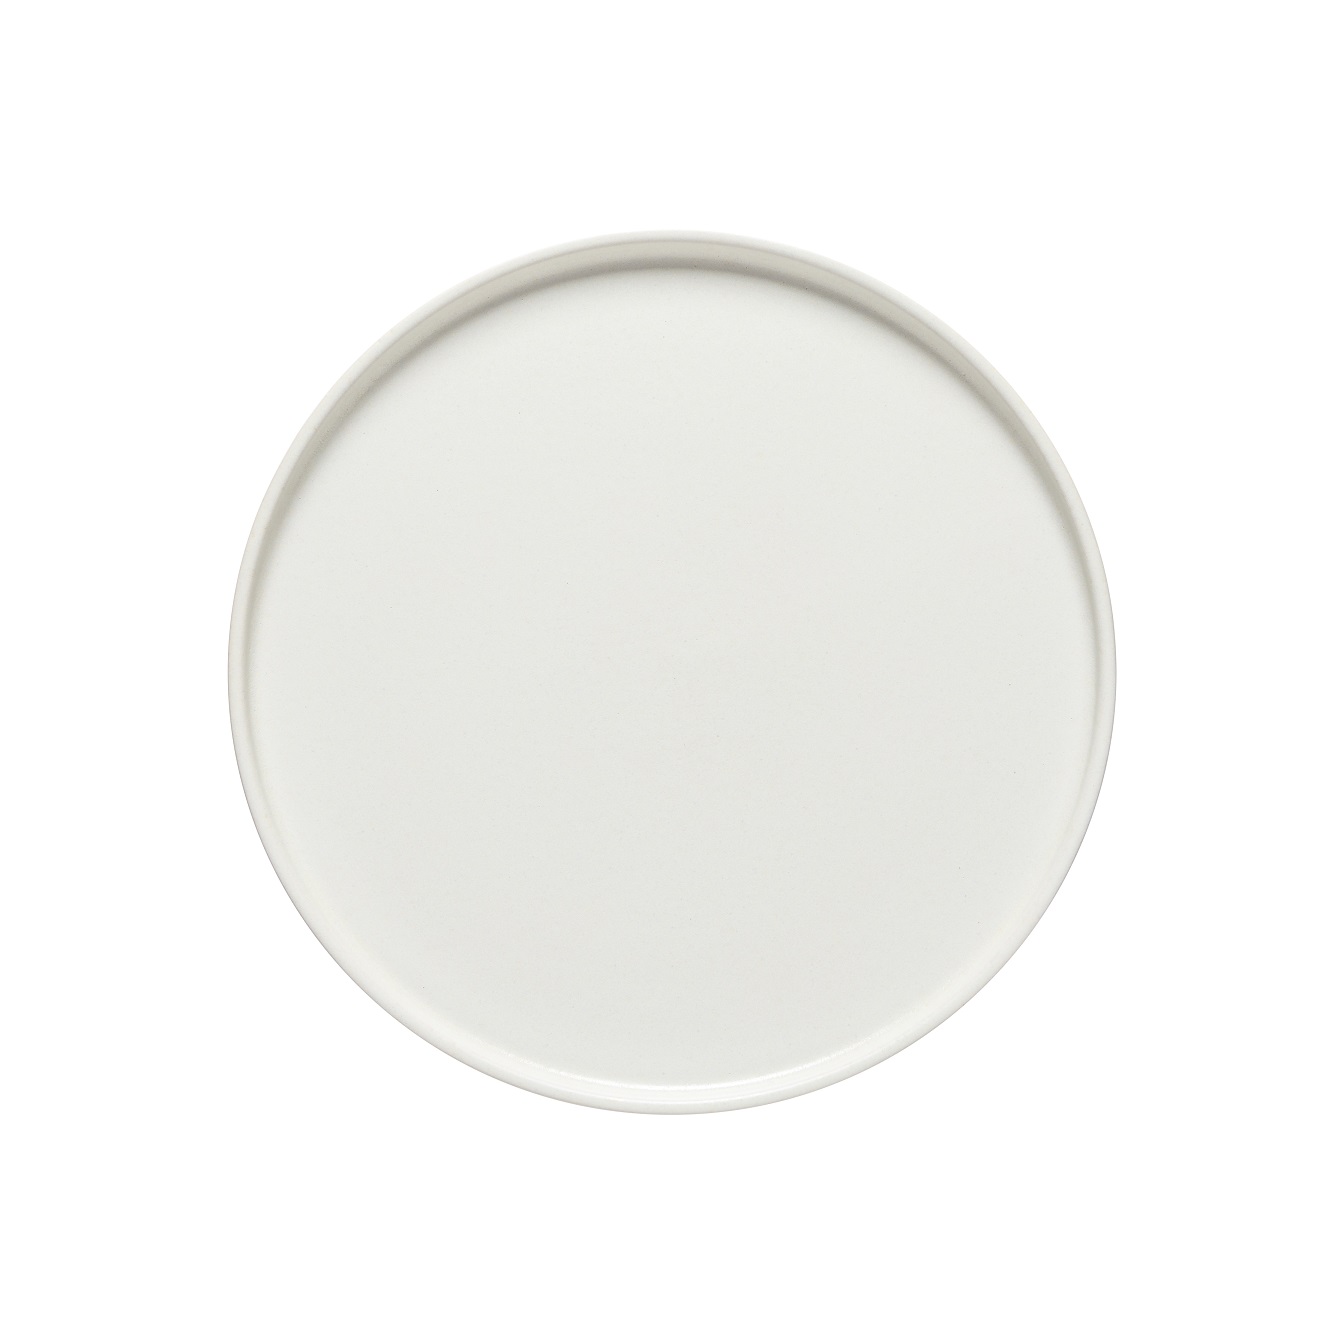 Redonda White Round Plate 29cm Gift